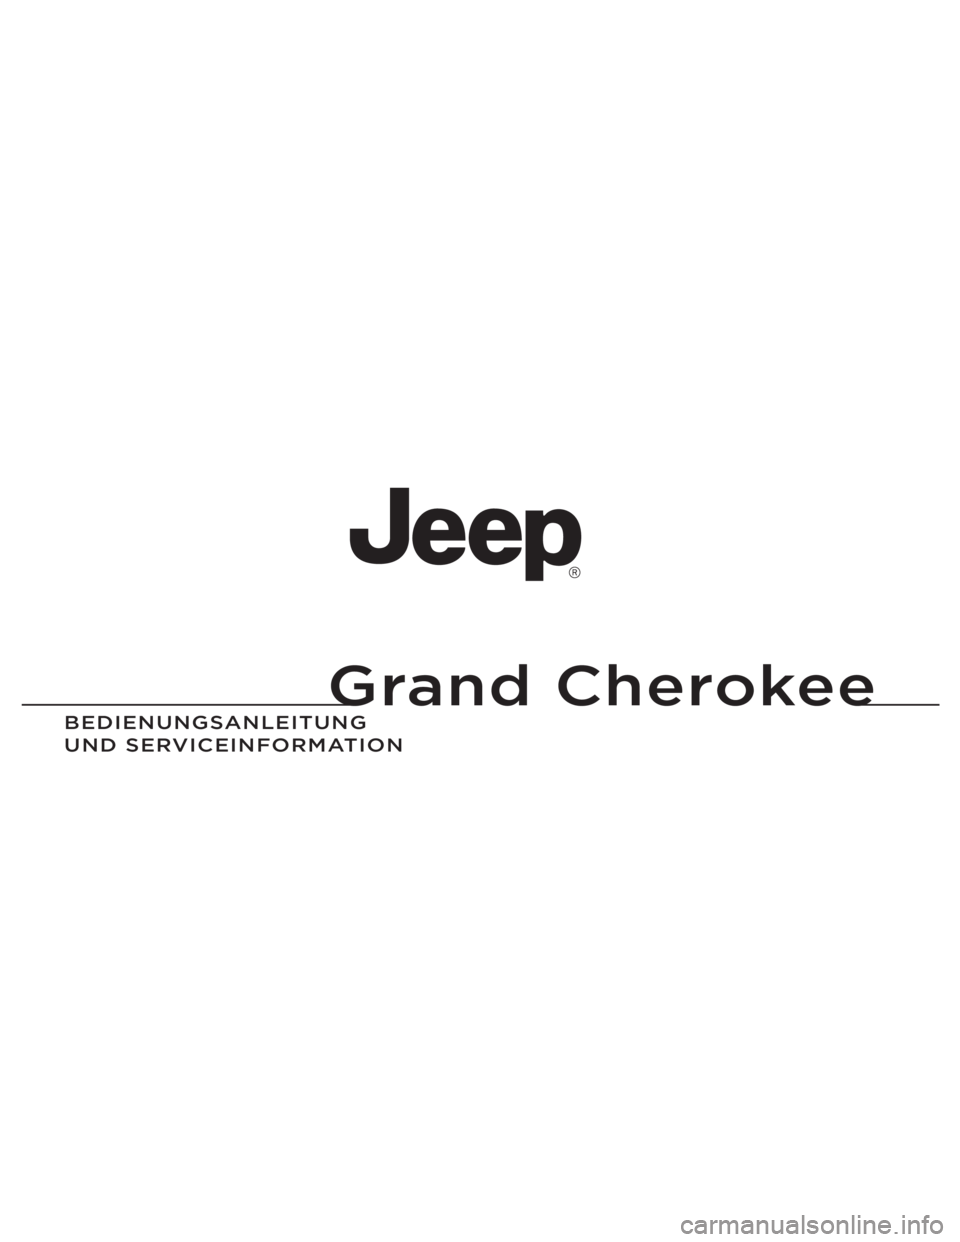 JEEP GRAND CHEROKEE 2012  Betriebsanleitung (in German) Grand Cherokee
BEDIENUNGSAN\fEITUNG 
UND SERVICEIN\bORMATION 